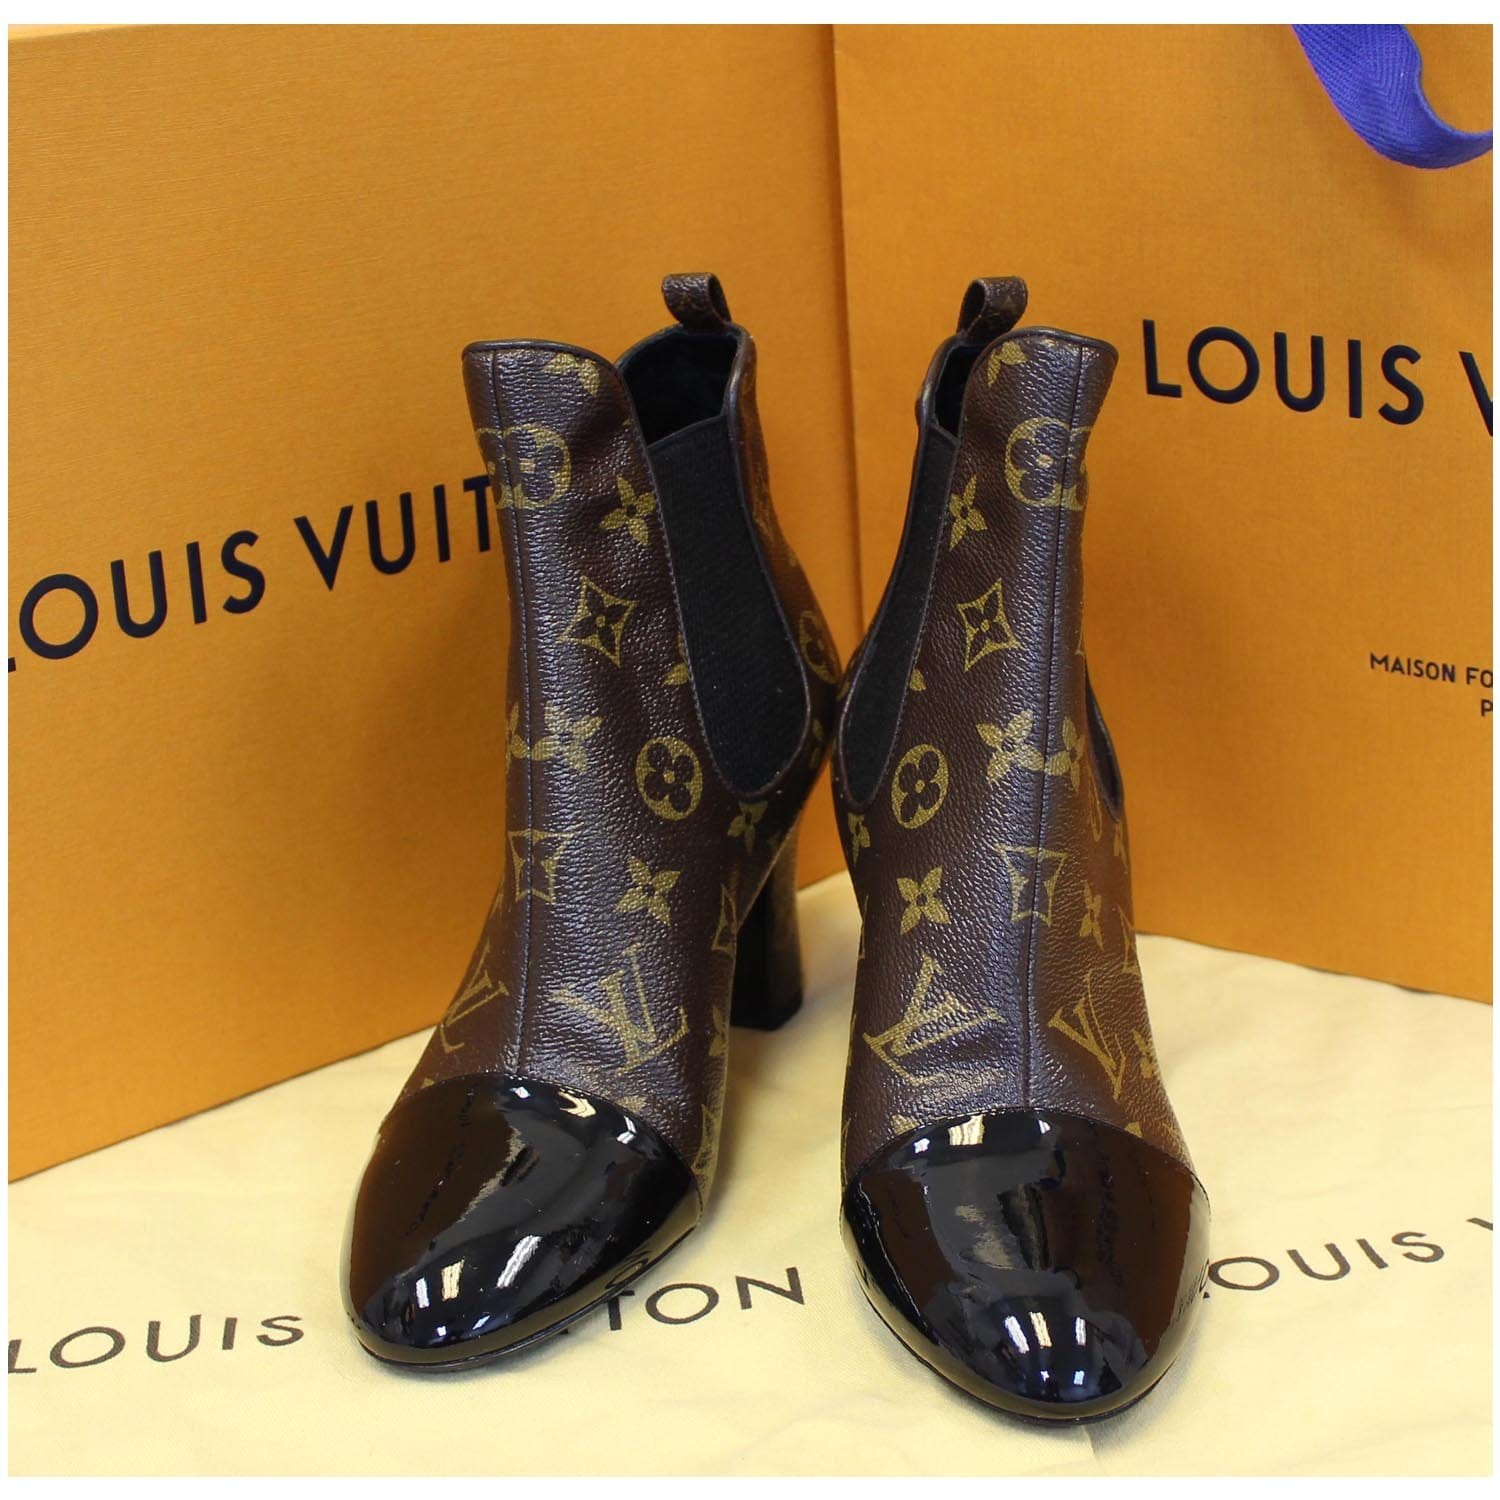 Ankle Boots Louis Vuitton Louis Vuitton Ankle Boots T.eu 39 Leather Size 39 EU